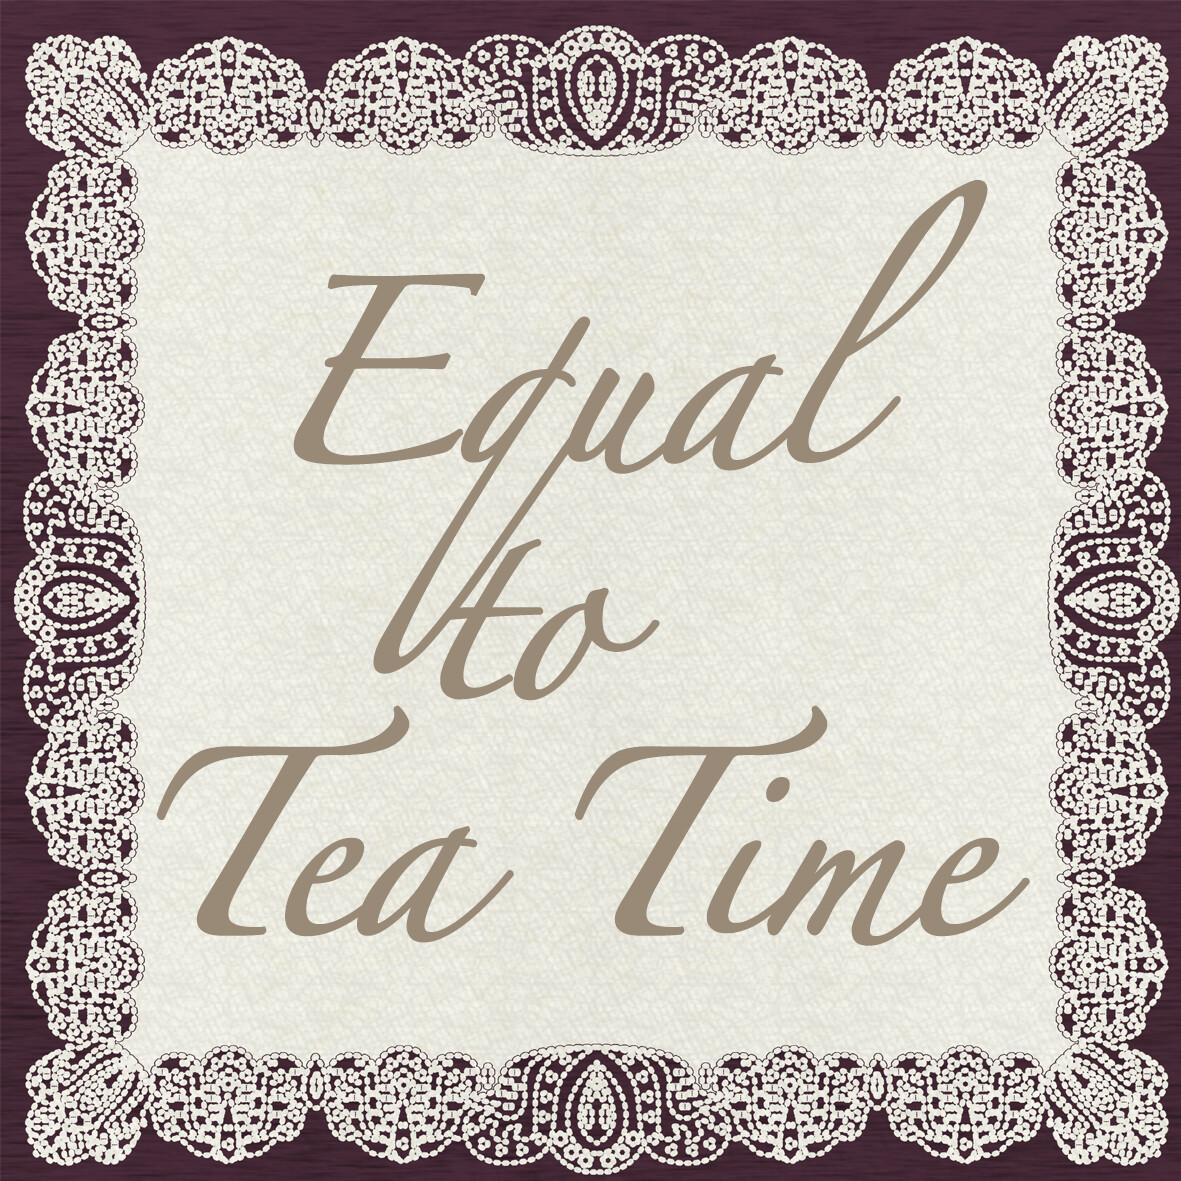 Equal to Tea Time 